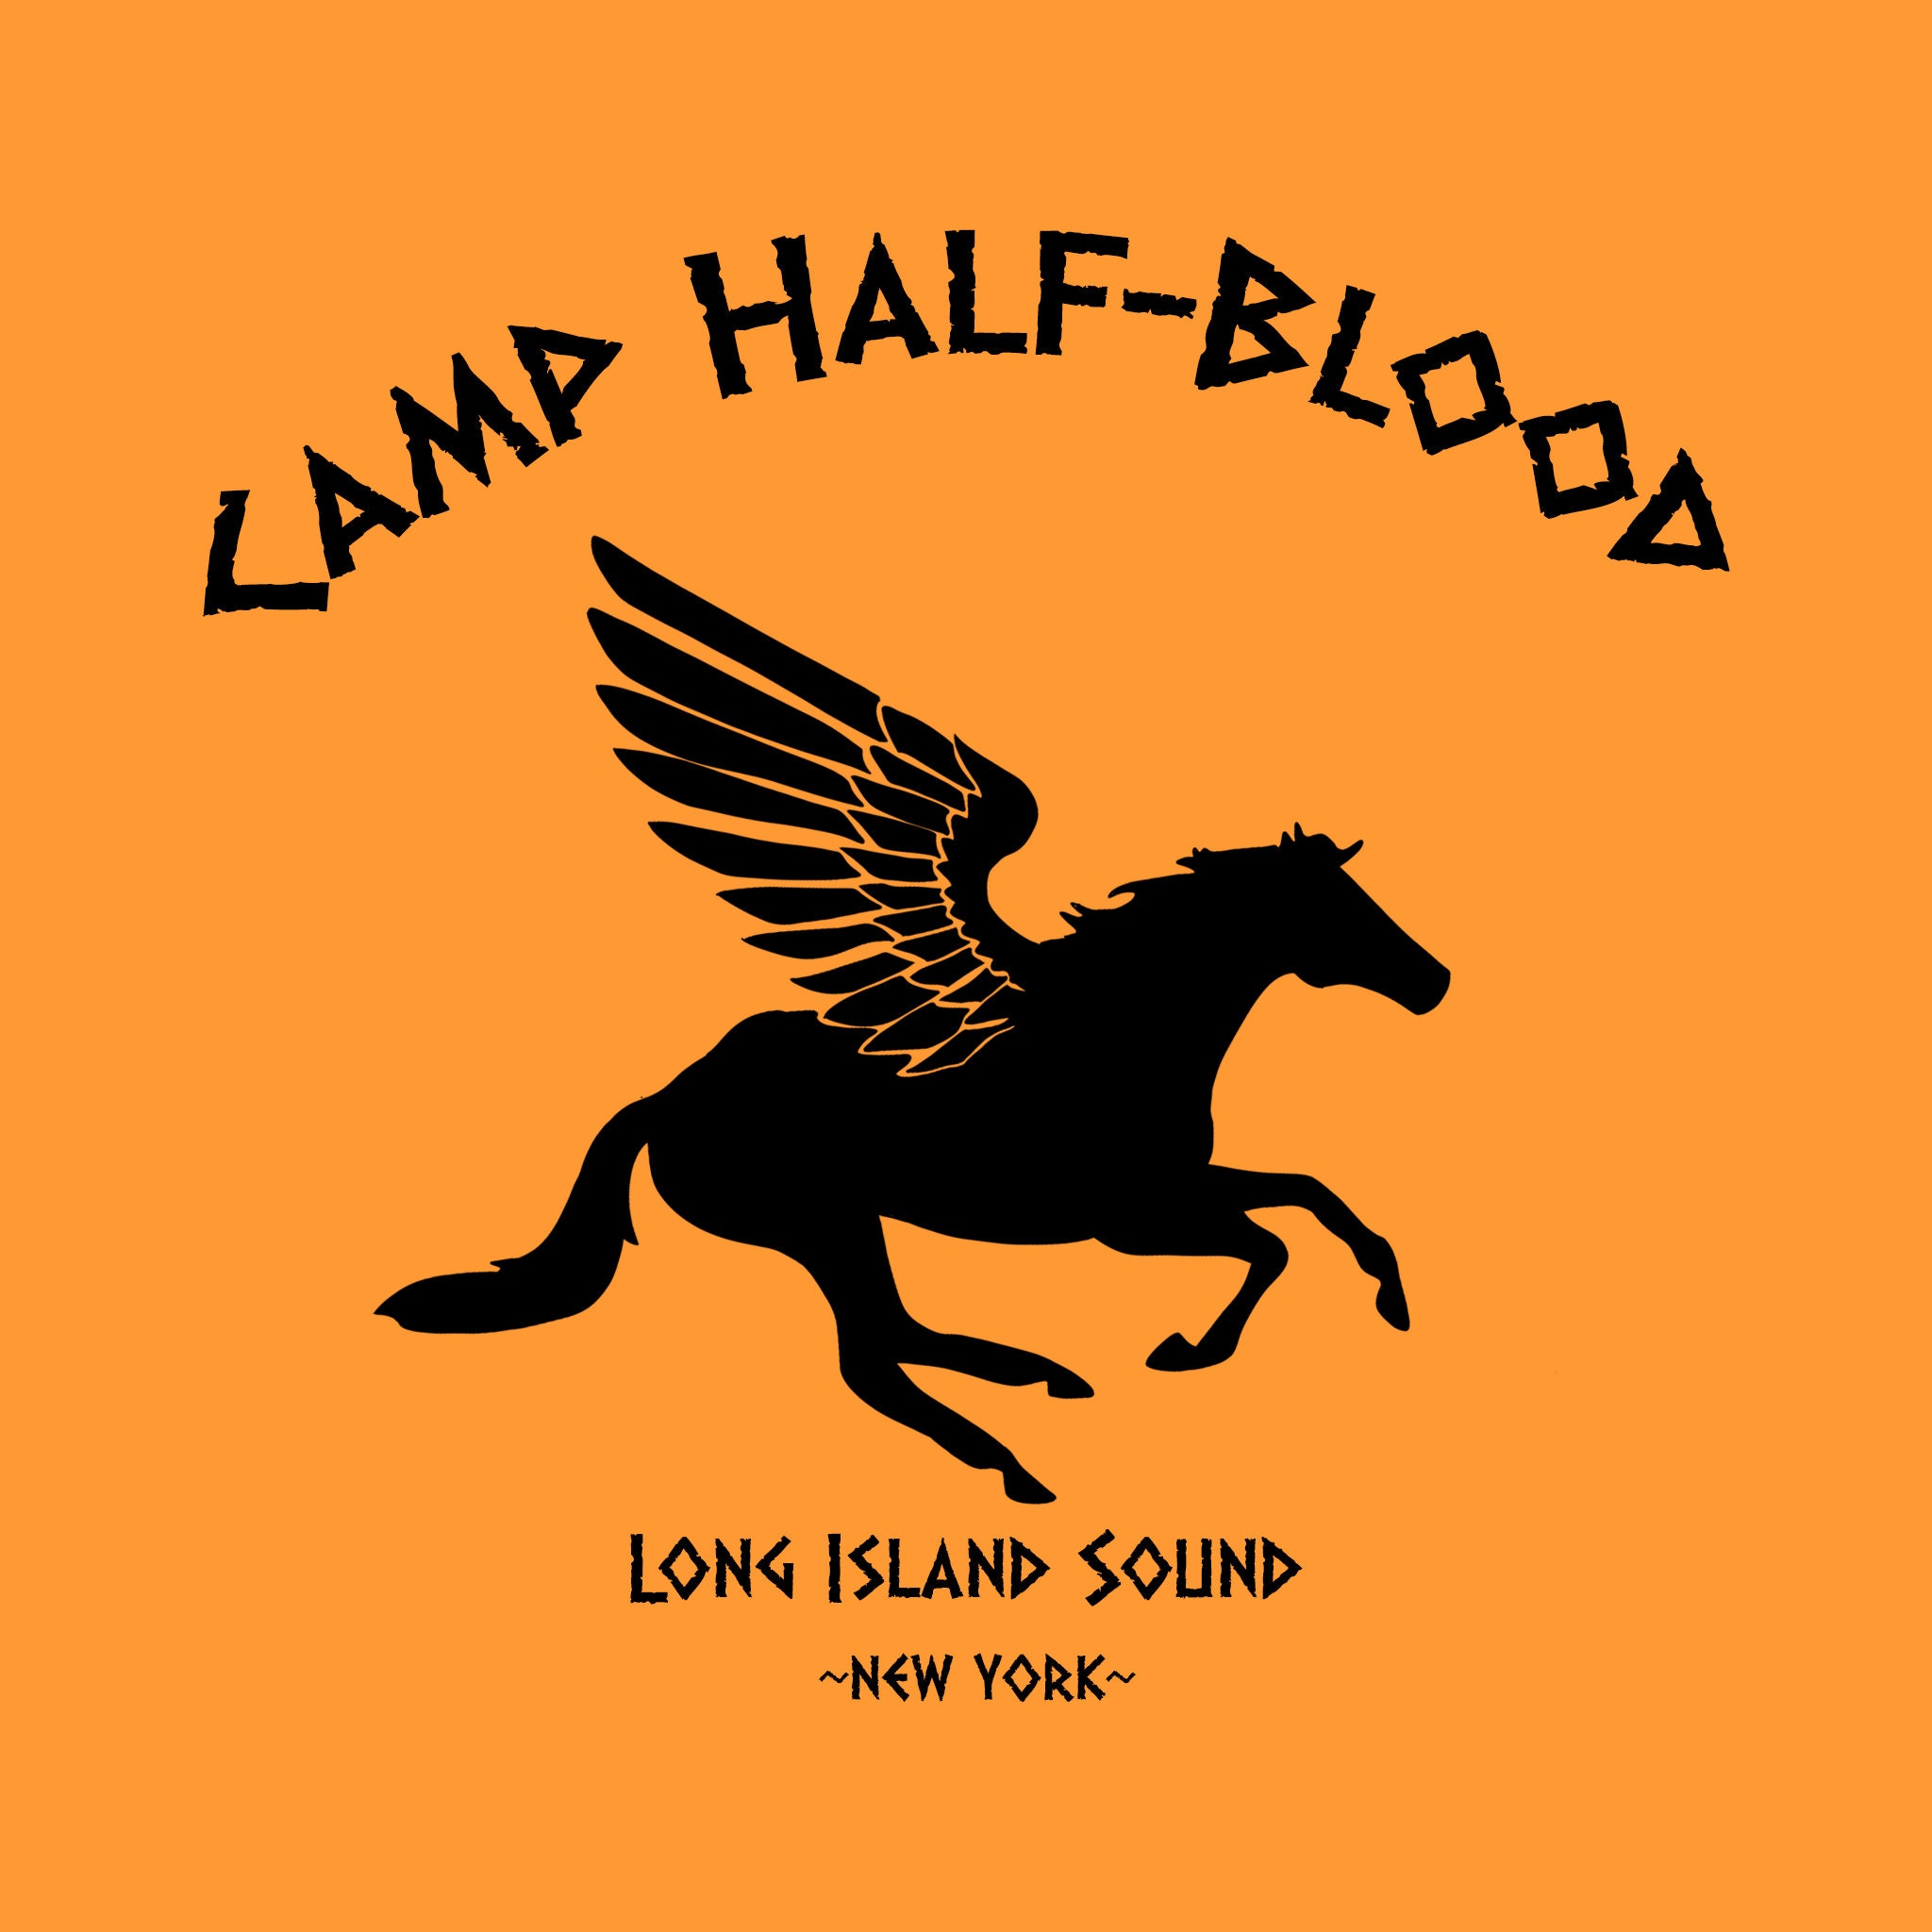  TOOLOUD Camp Half Blood - Camiseta para hombre de media sangre,  Azul acuático : Ropa, Zapatos y Joyería